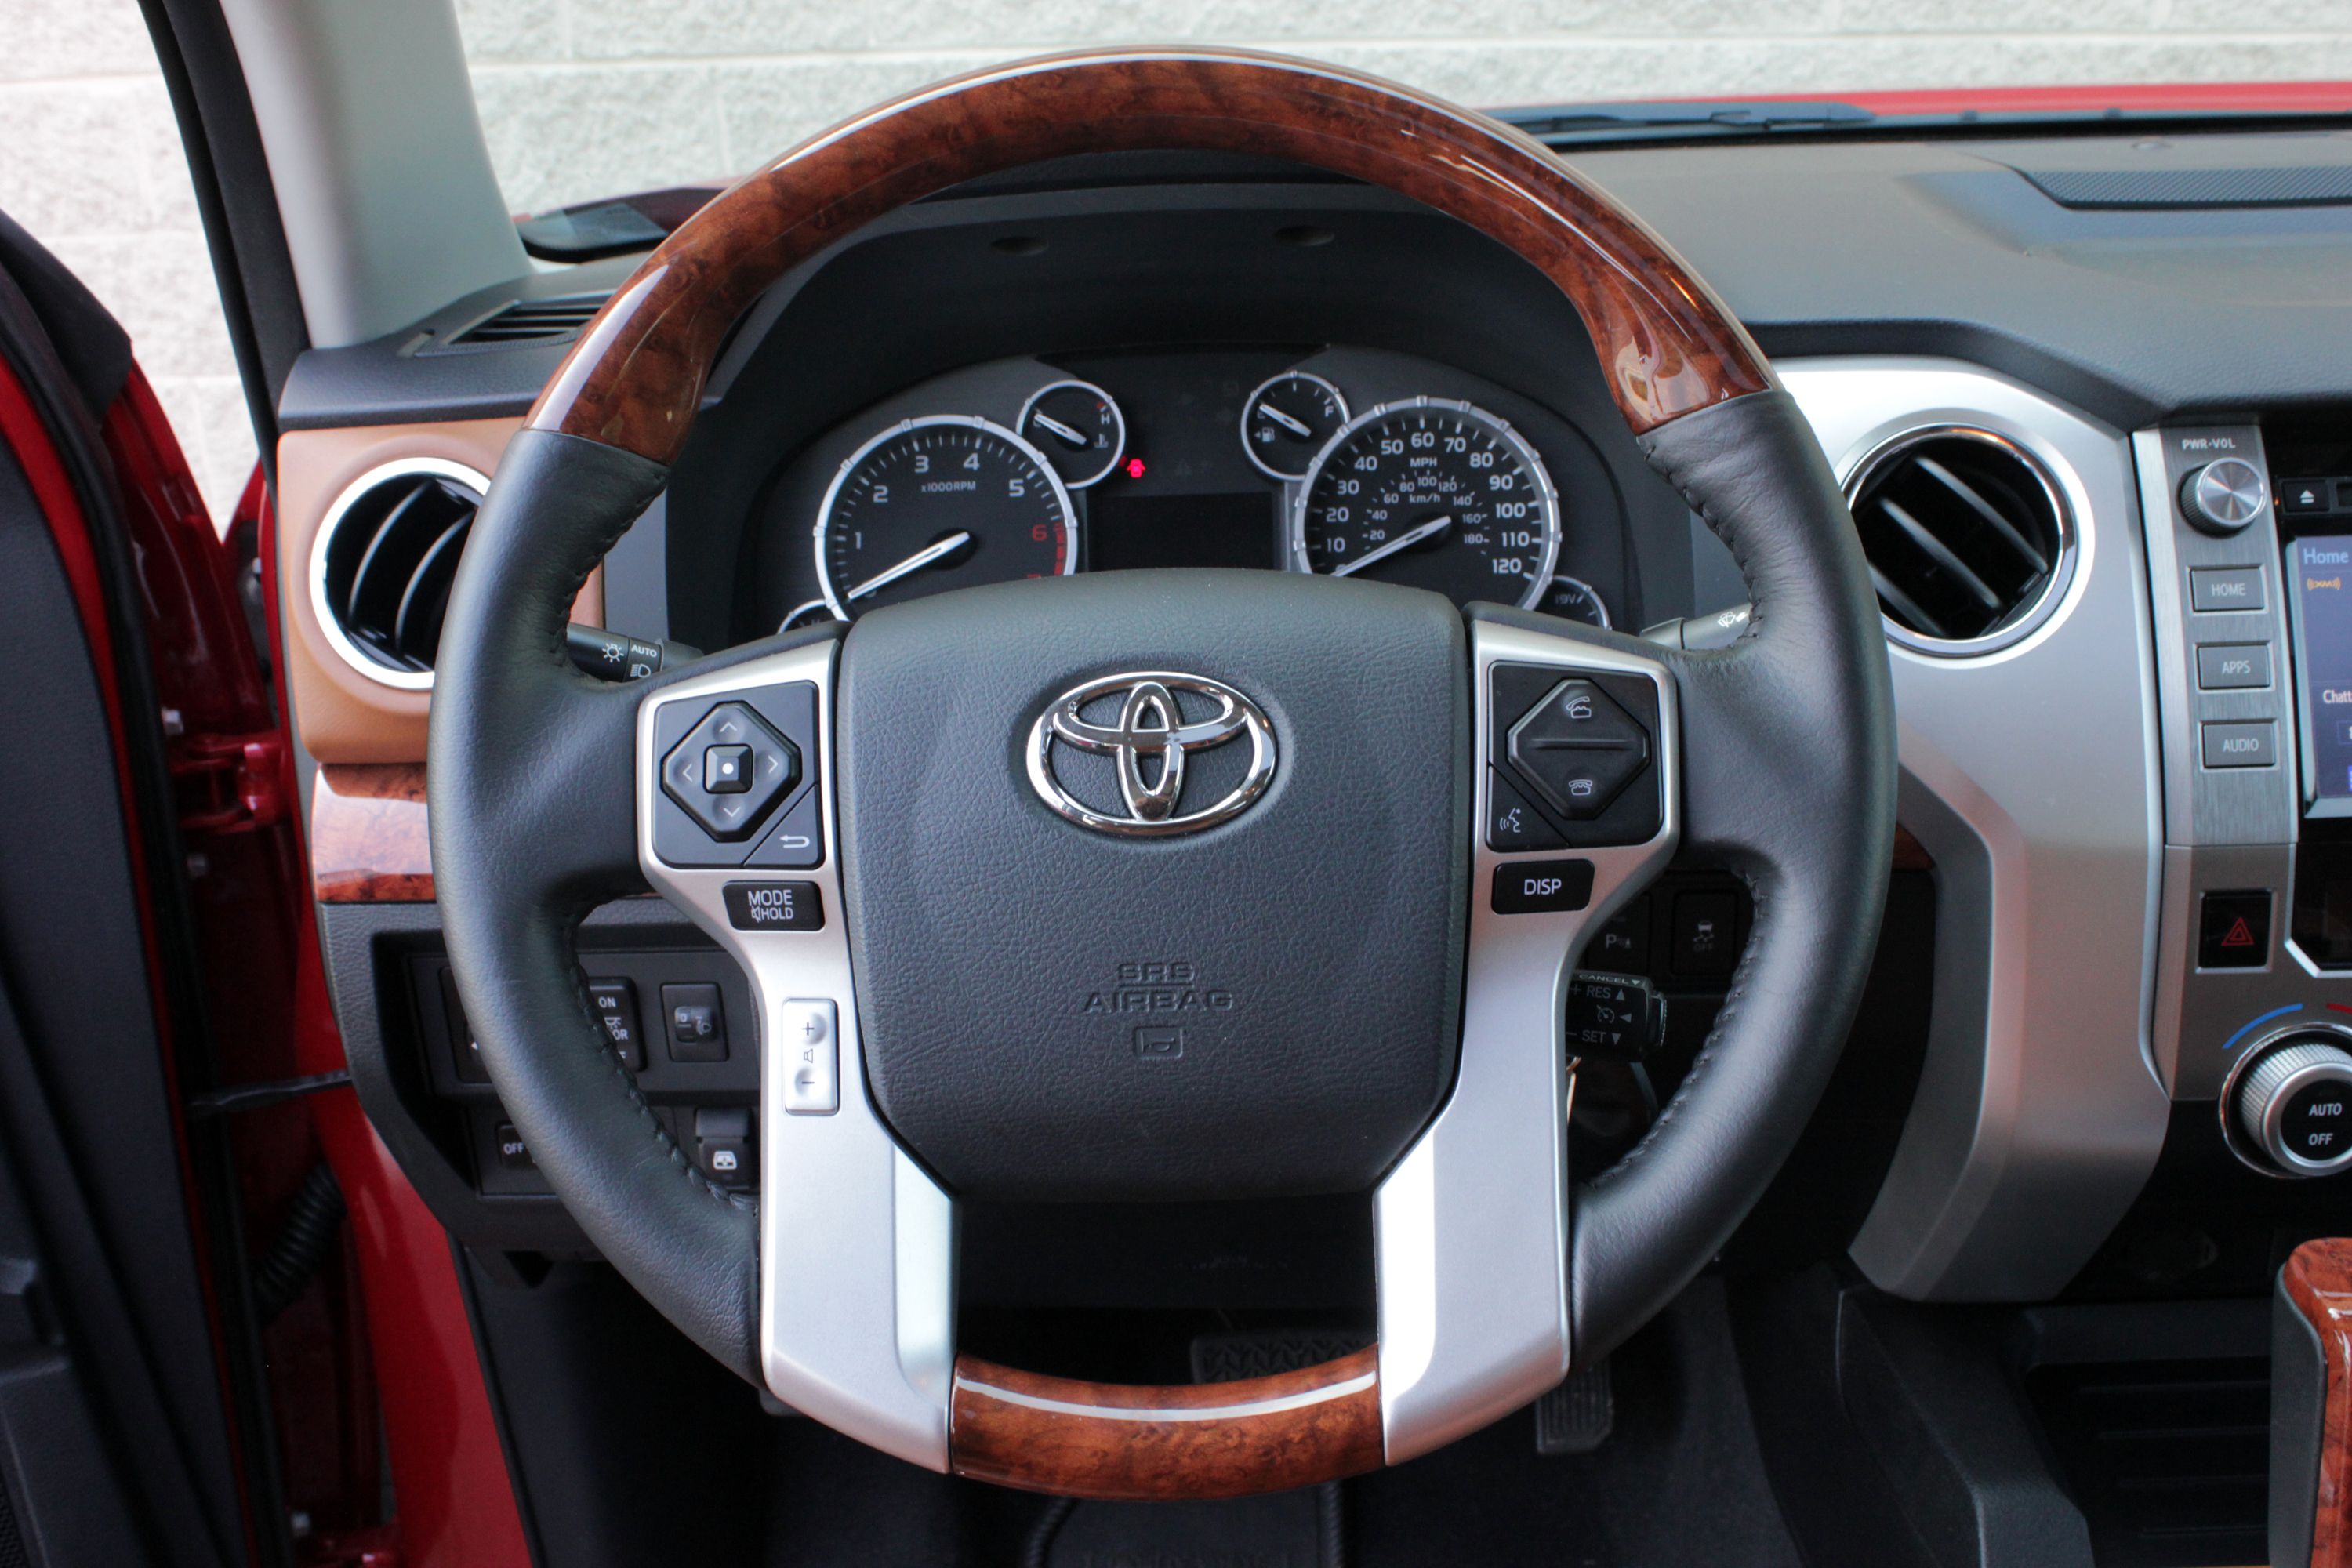 2014 Toyota Tundra 1794 - Driven